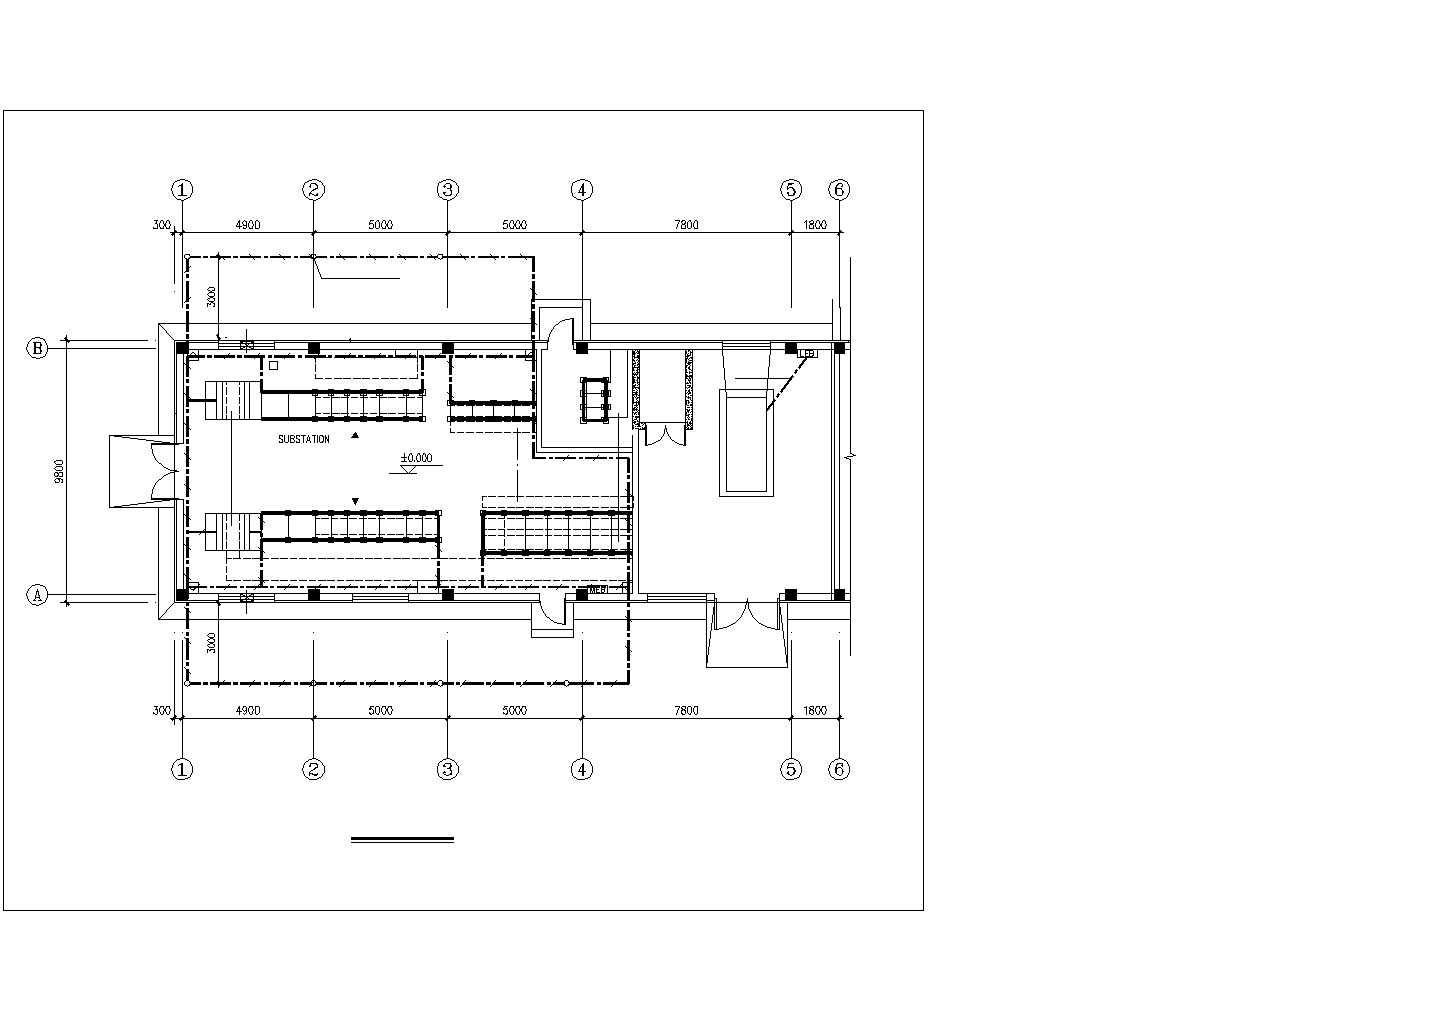 天津市陆路港某大型仓储公司内部变电室全套设计CAD图纸